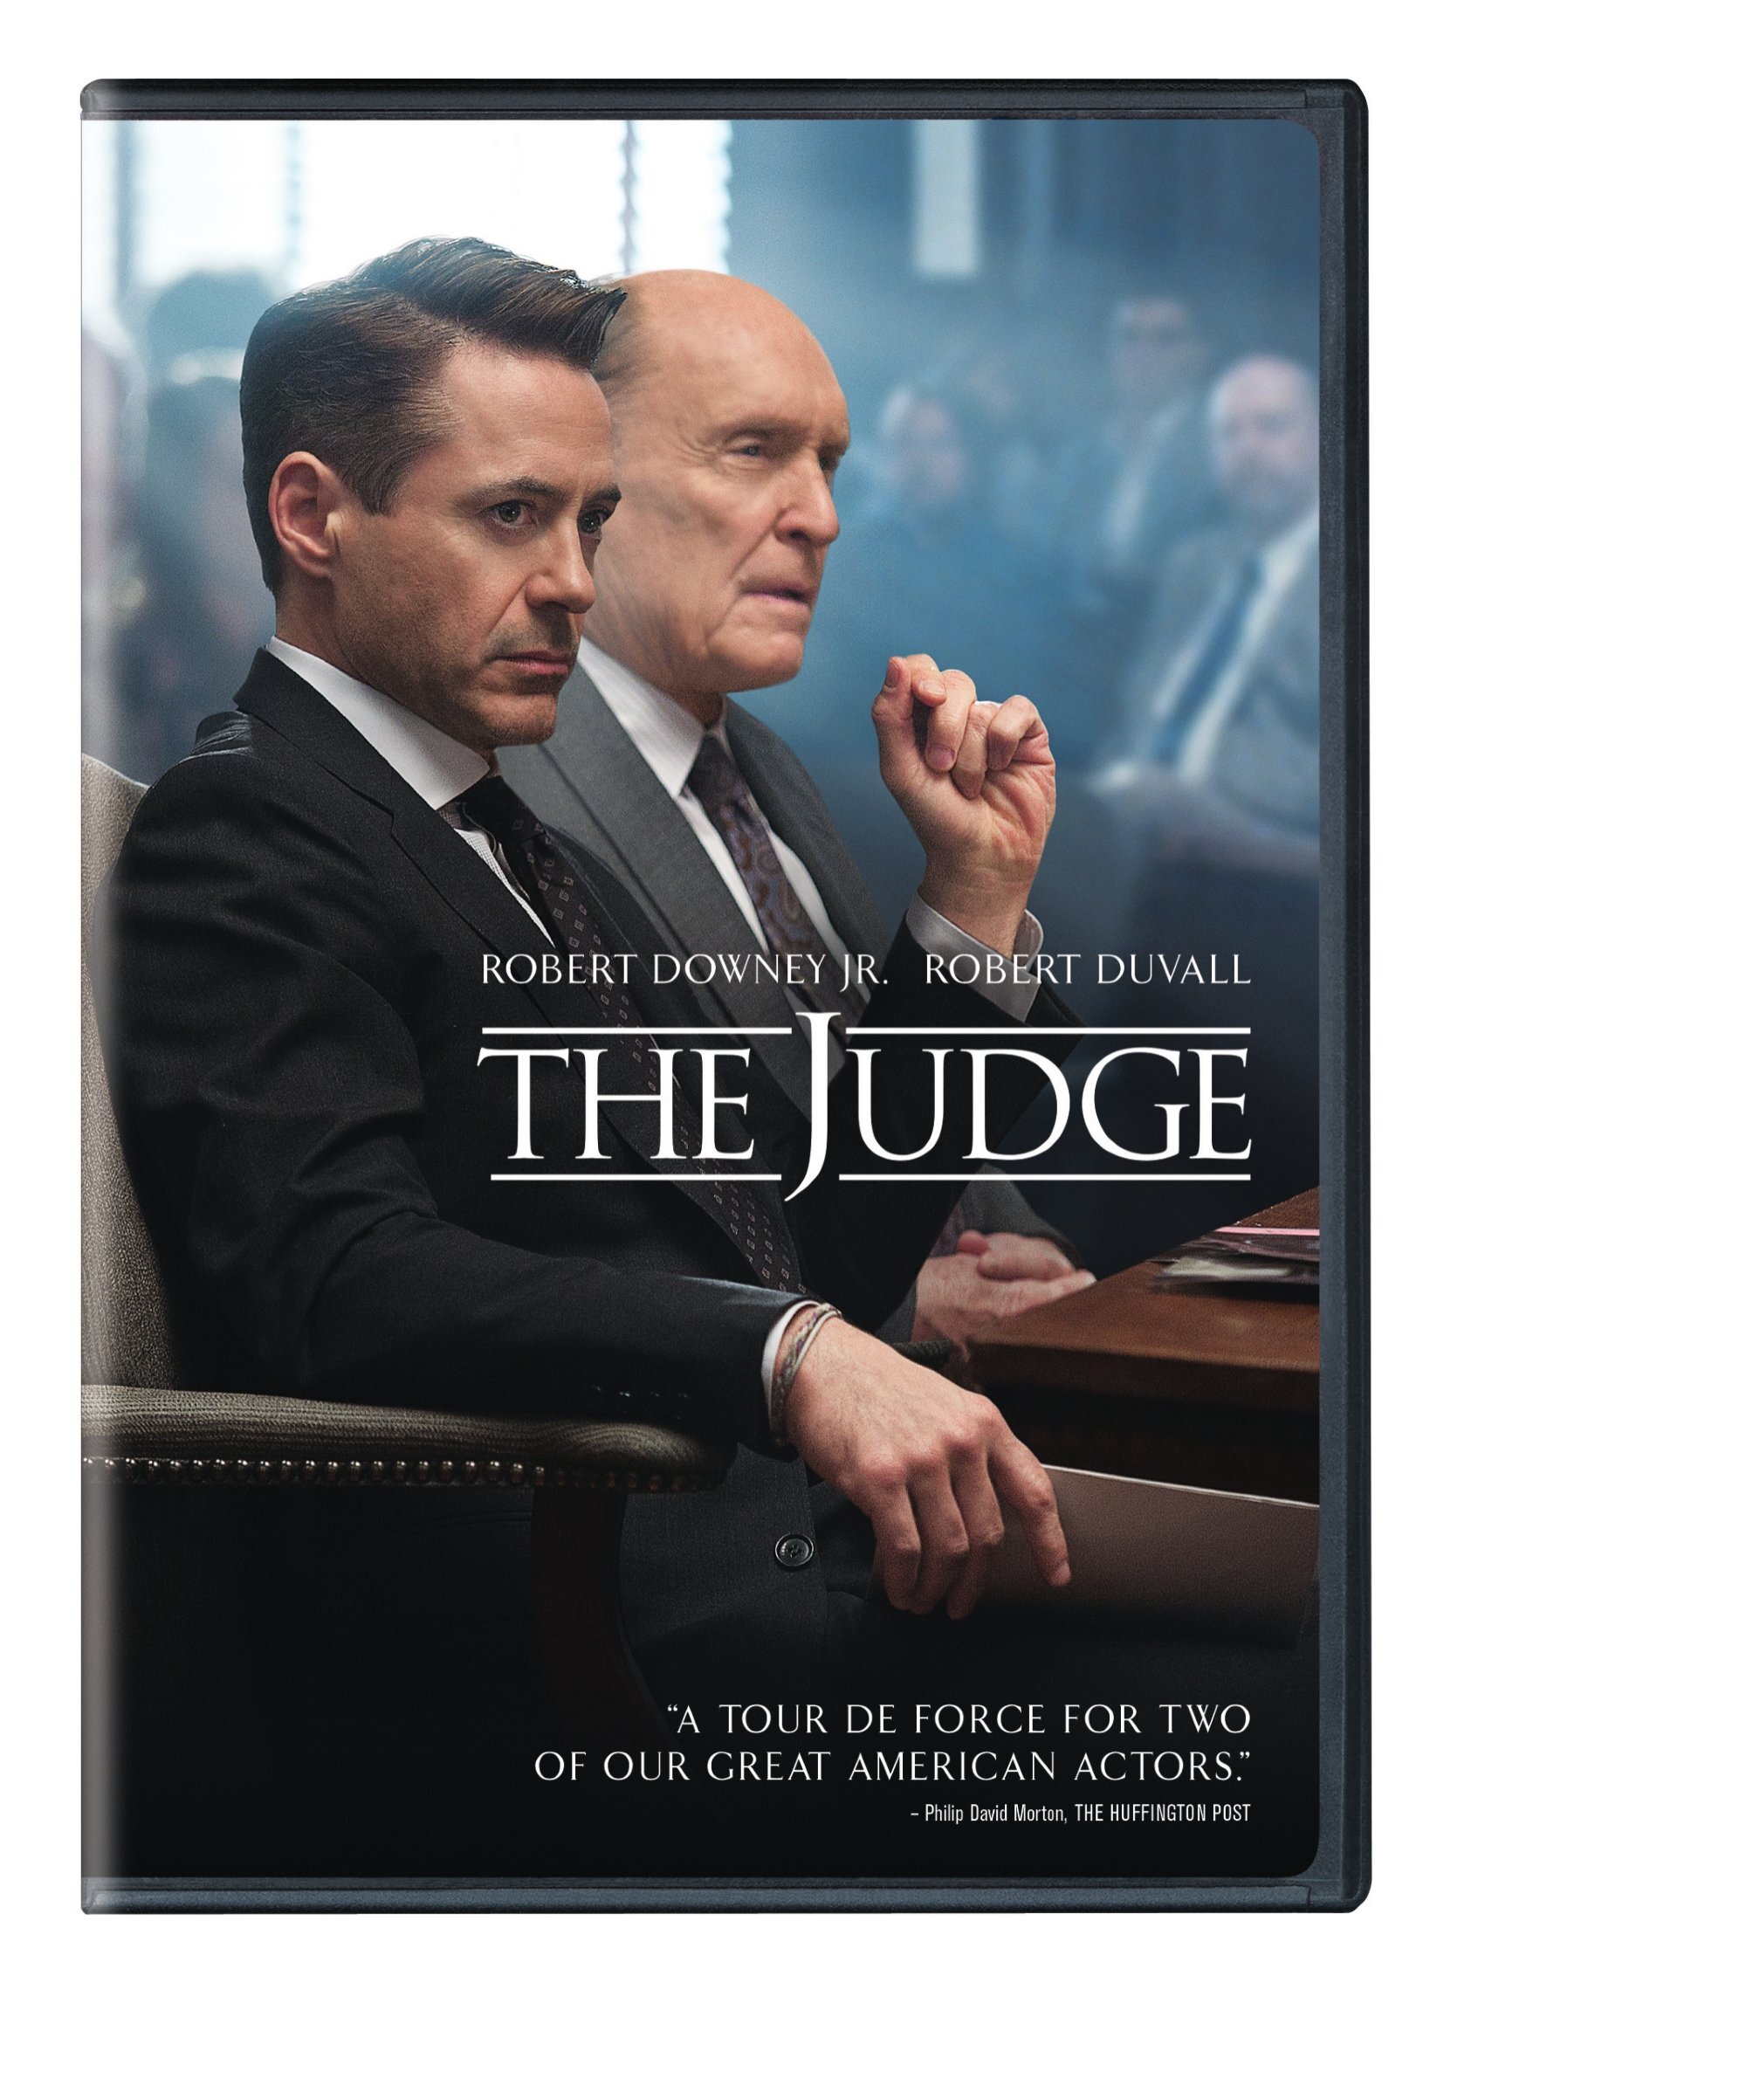 The Judge - DVD [ 2014 ]  - Drama Movies On DVD - Movies On GRUV